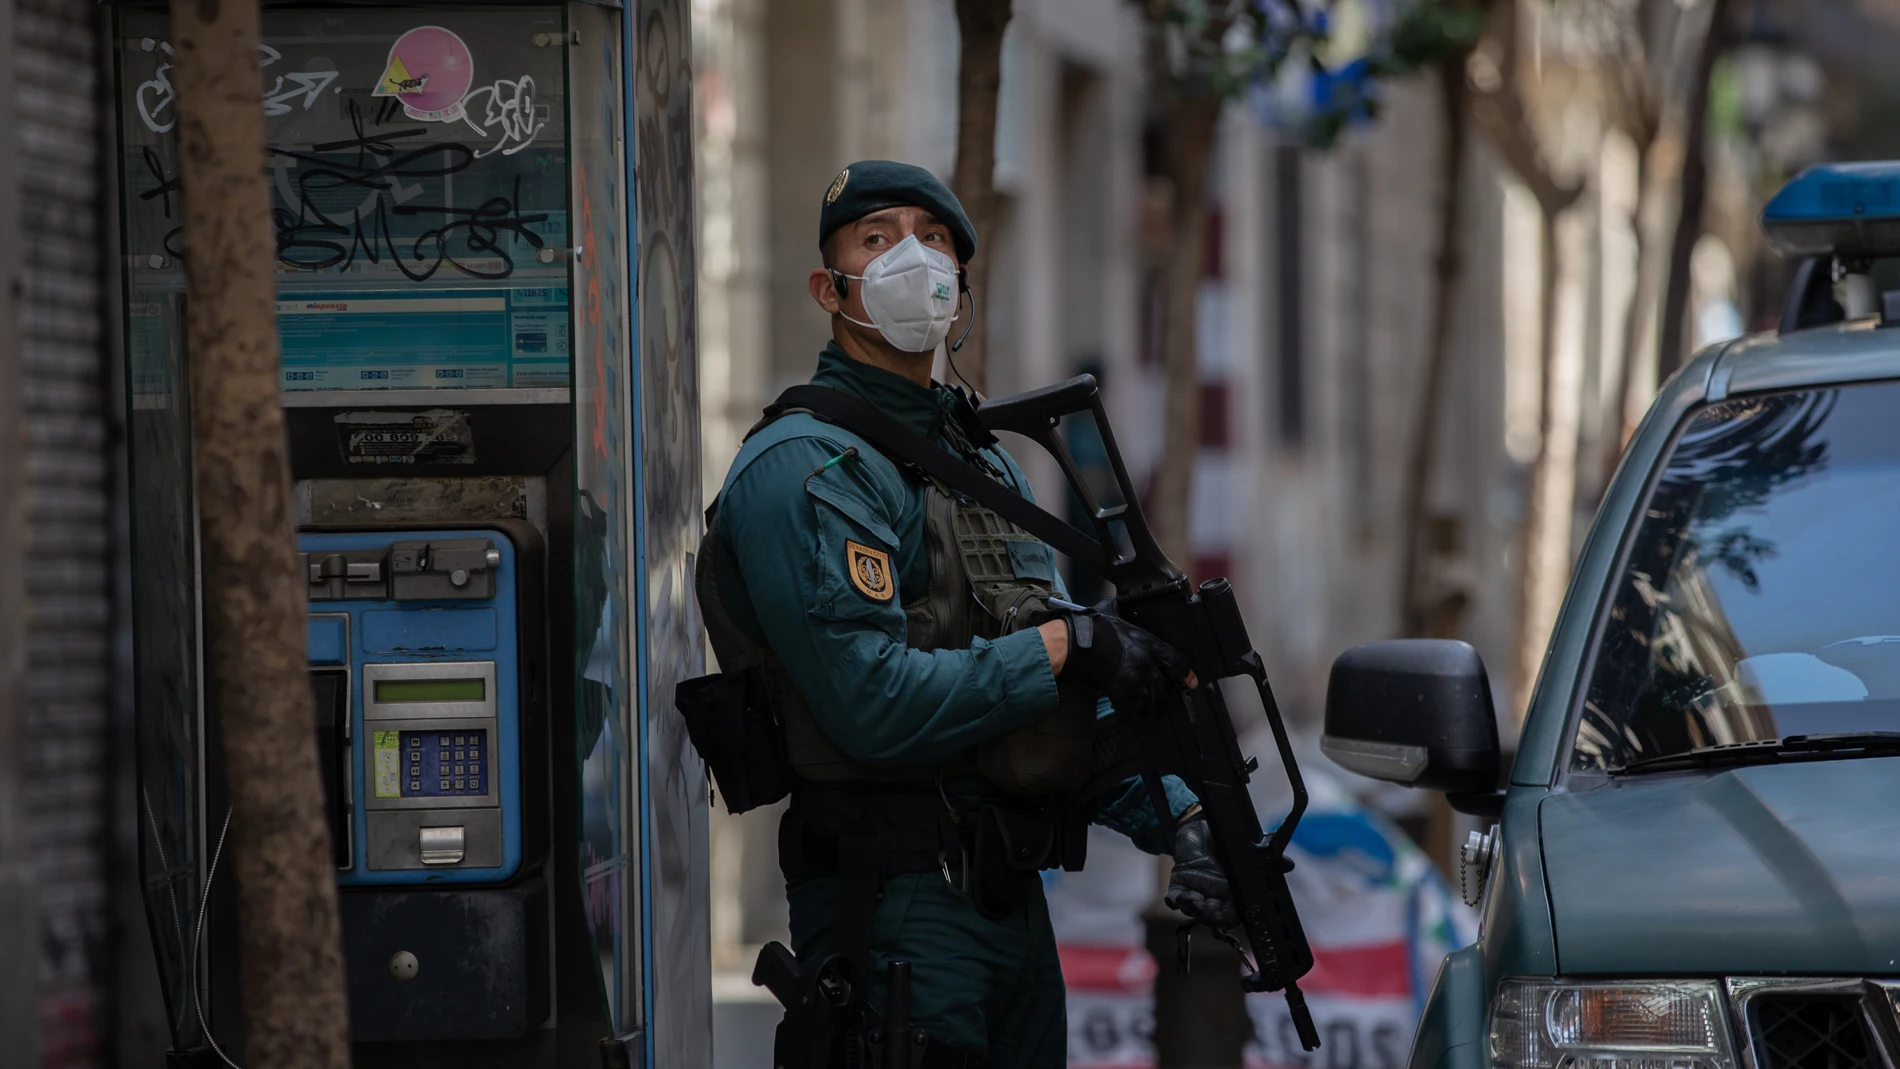 La Guardia Civil detiene en Barcelona a un supuesto yihadista que buscó objetivos bajo el estado de alarma